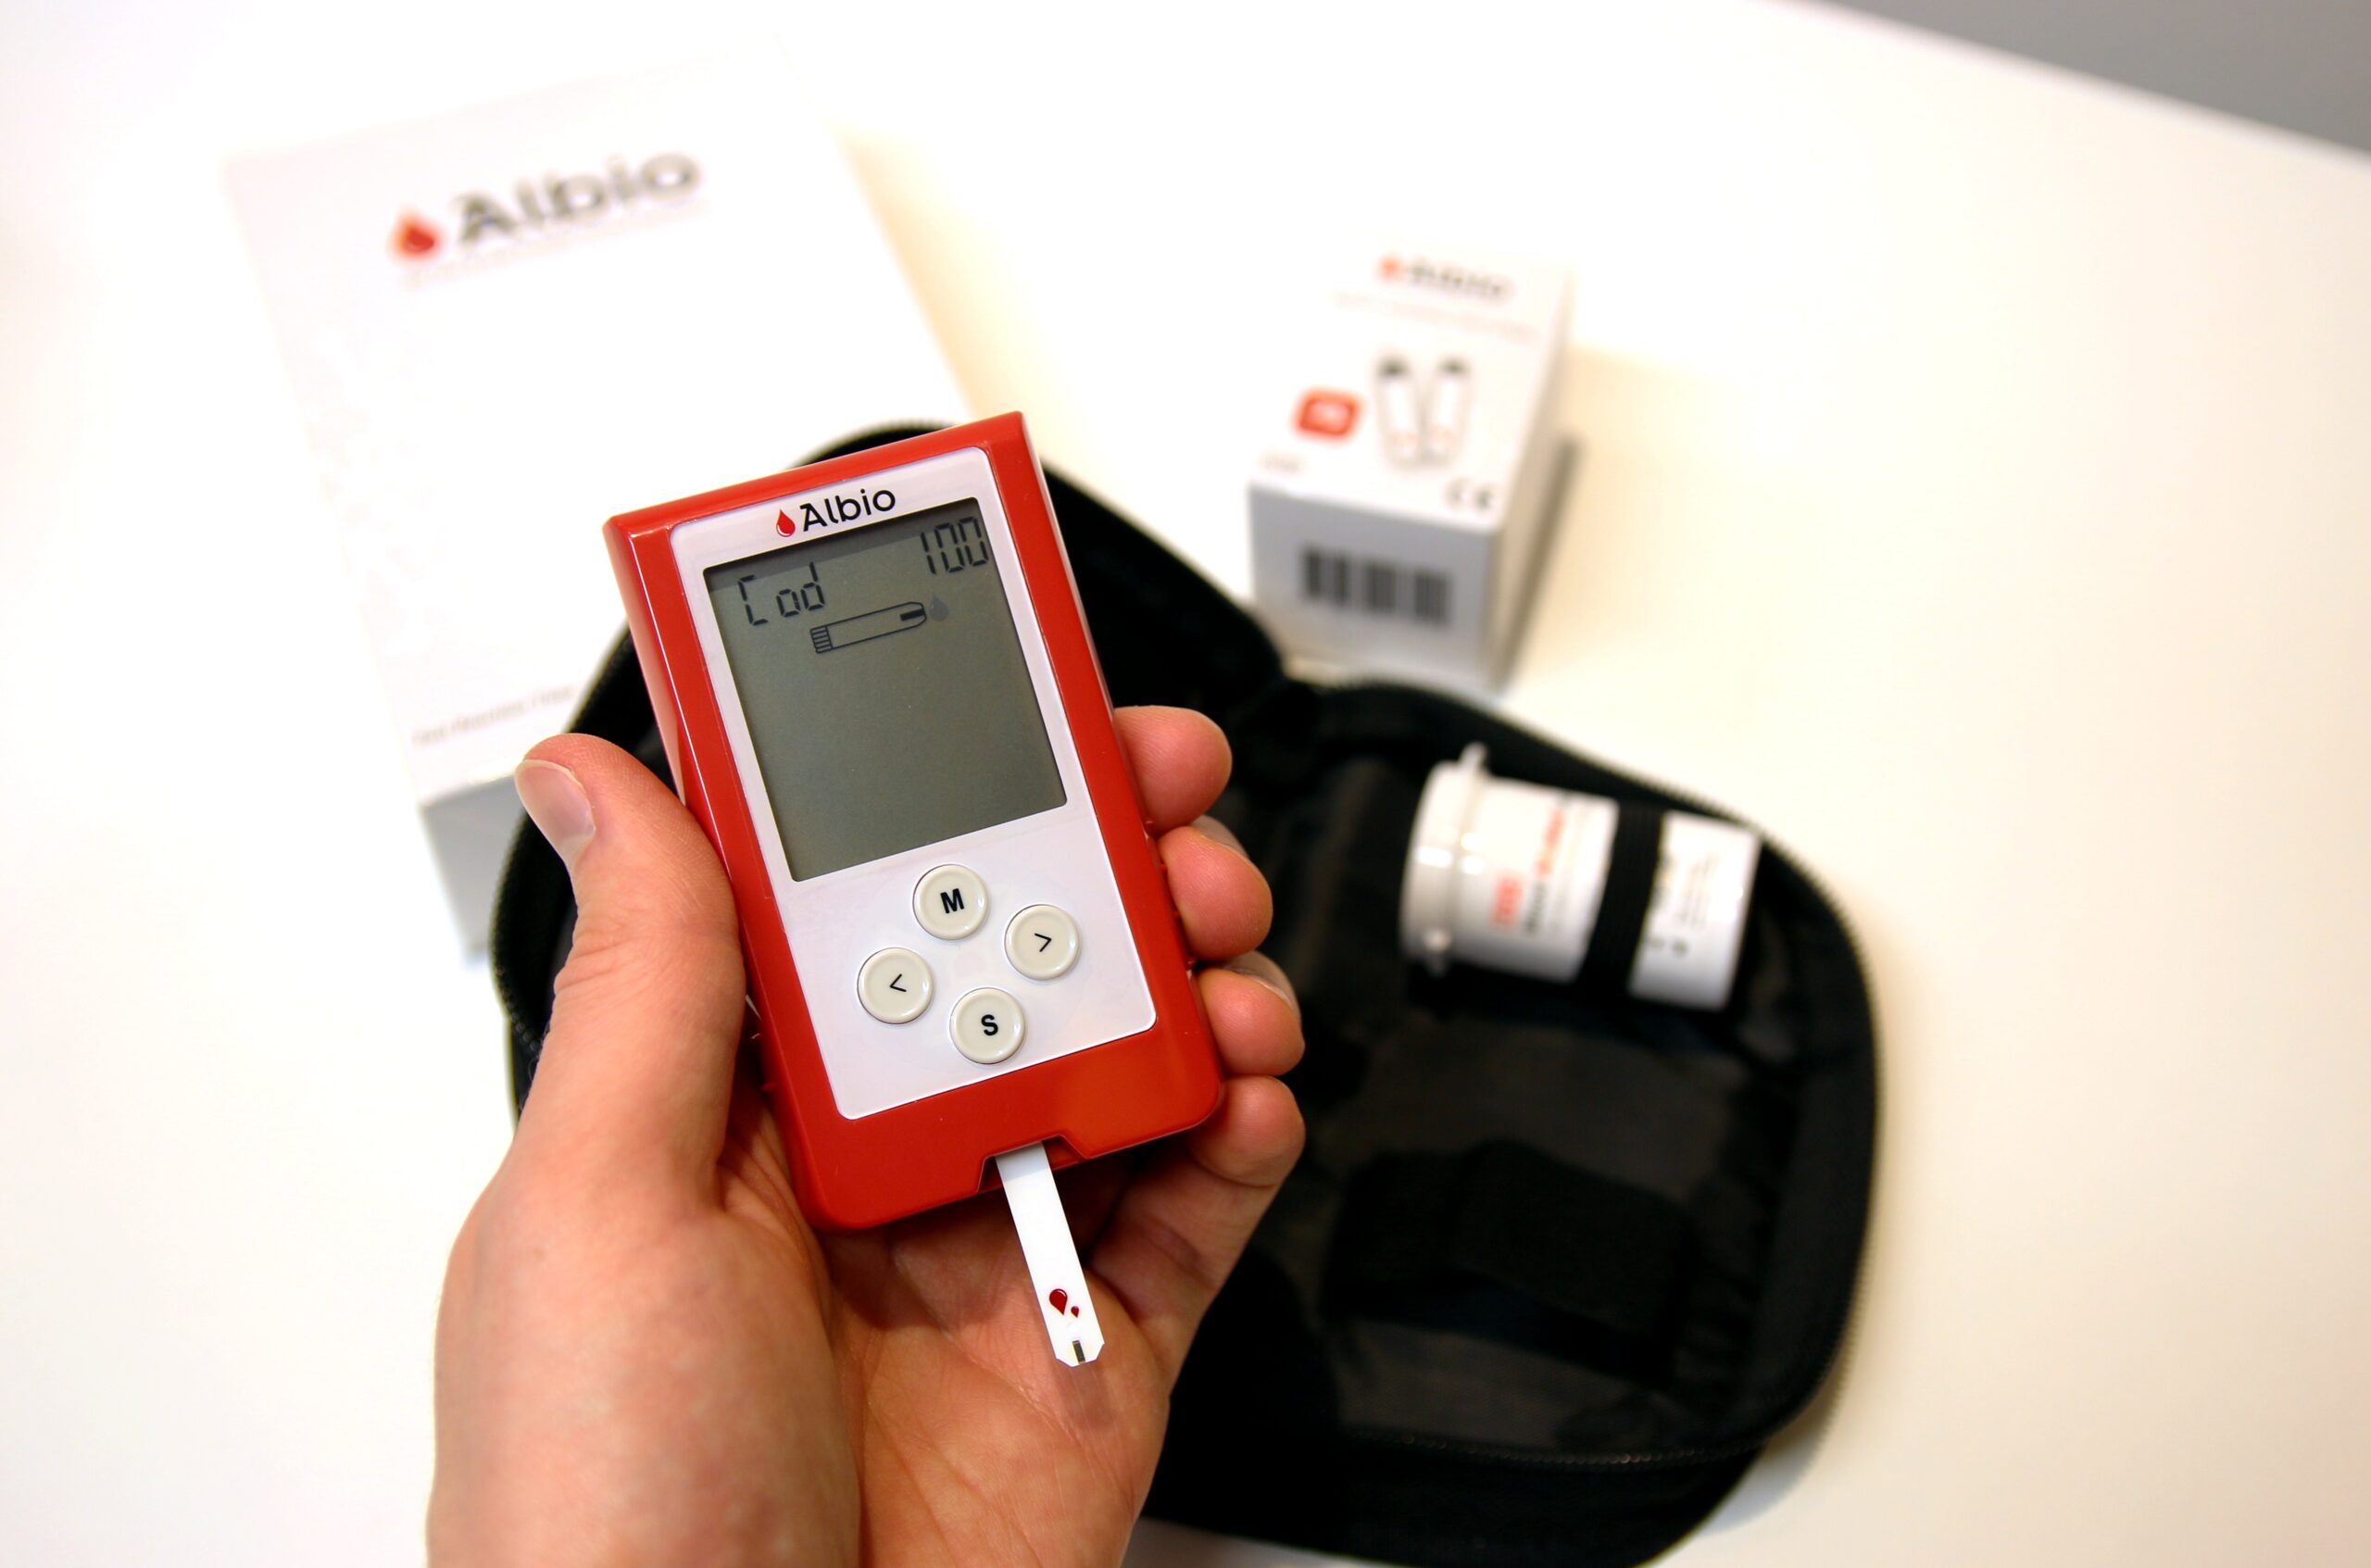 Albio alcohol biometer image 